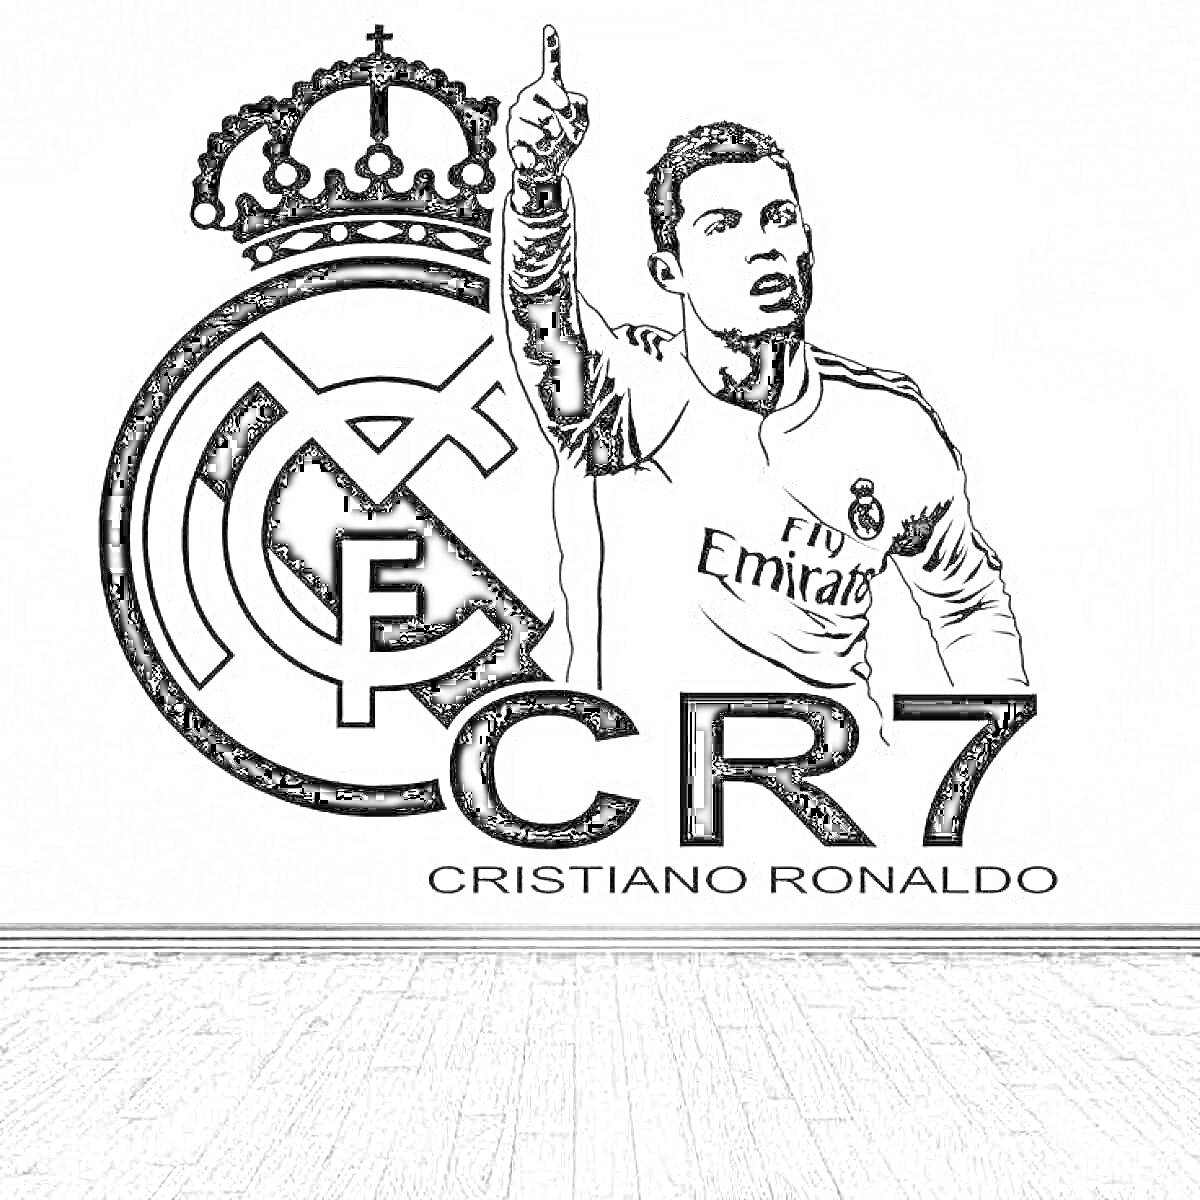 Раскраска Кристиано Роналдо на фоне эмблемы футбольного клуба с надписями 